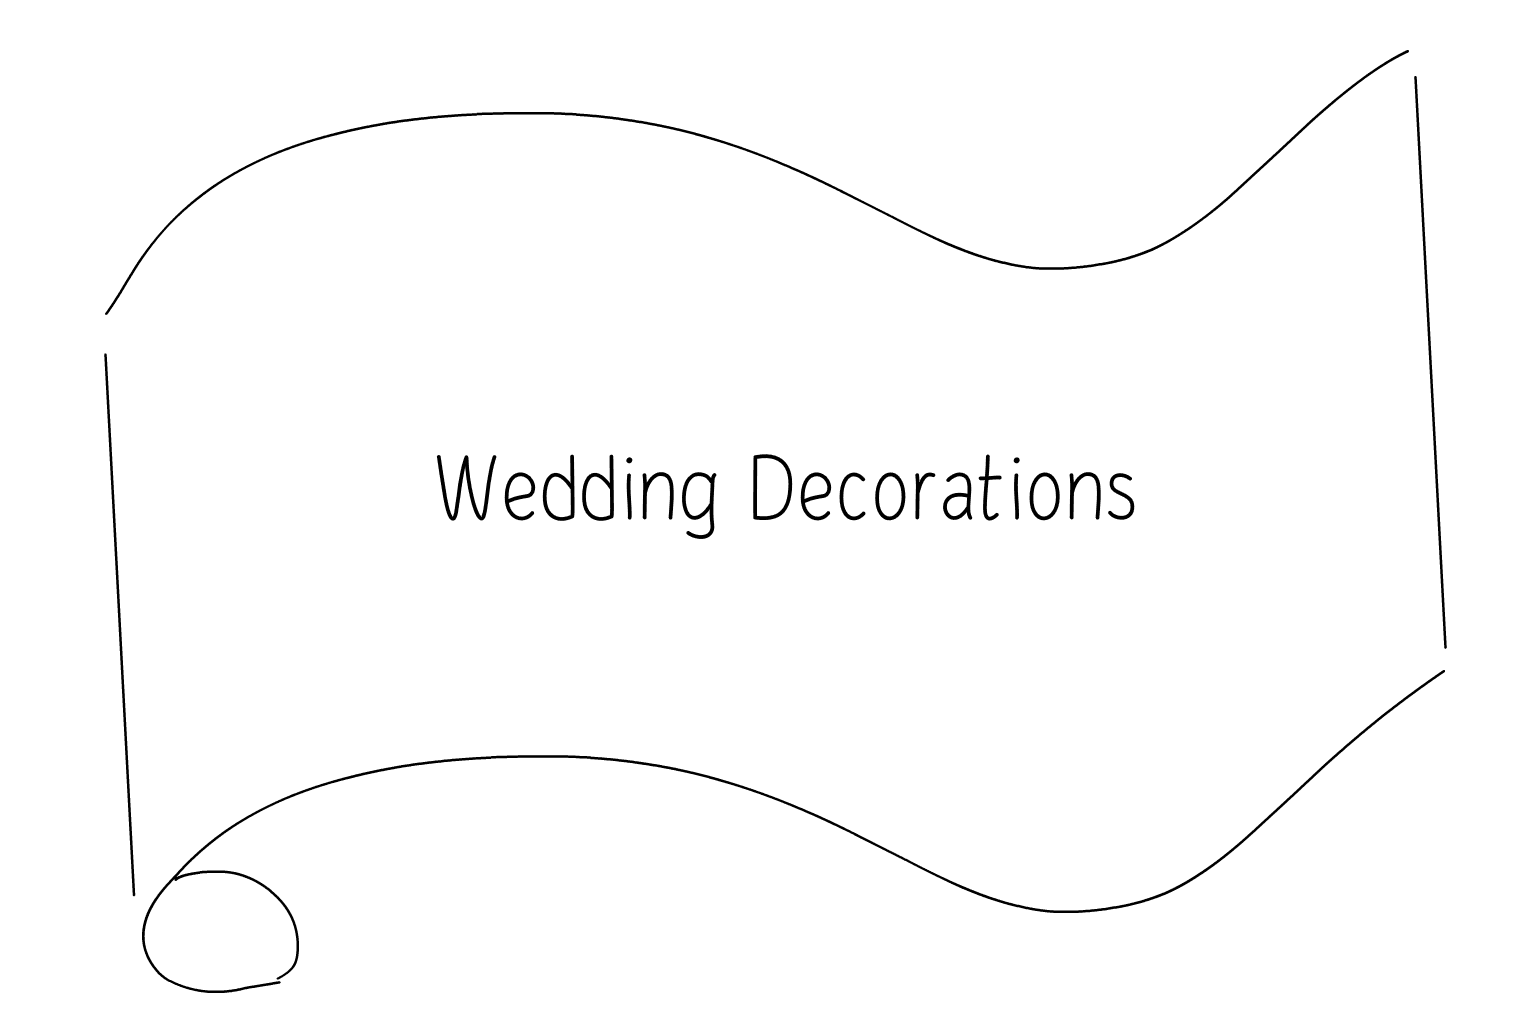 Ilustrație de decorațiuni de nuntă